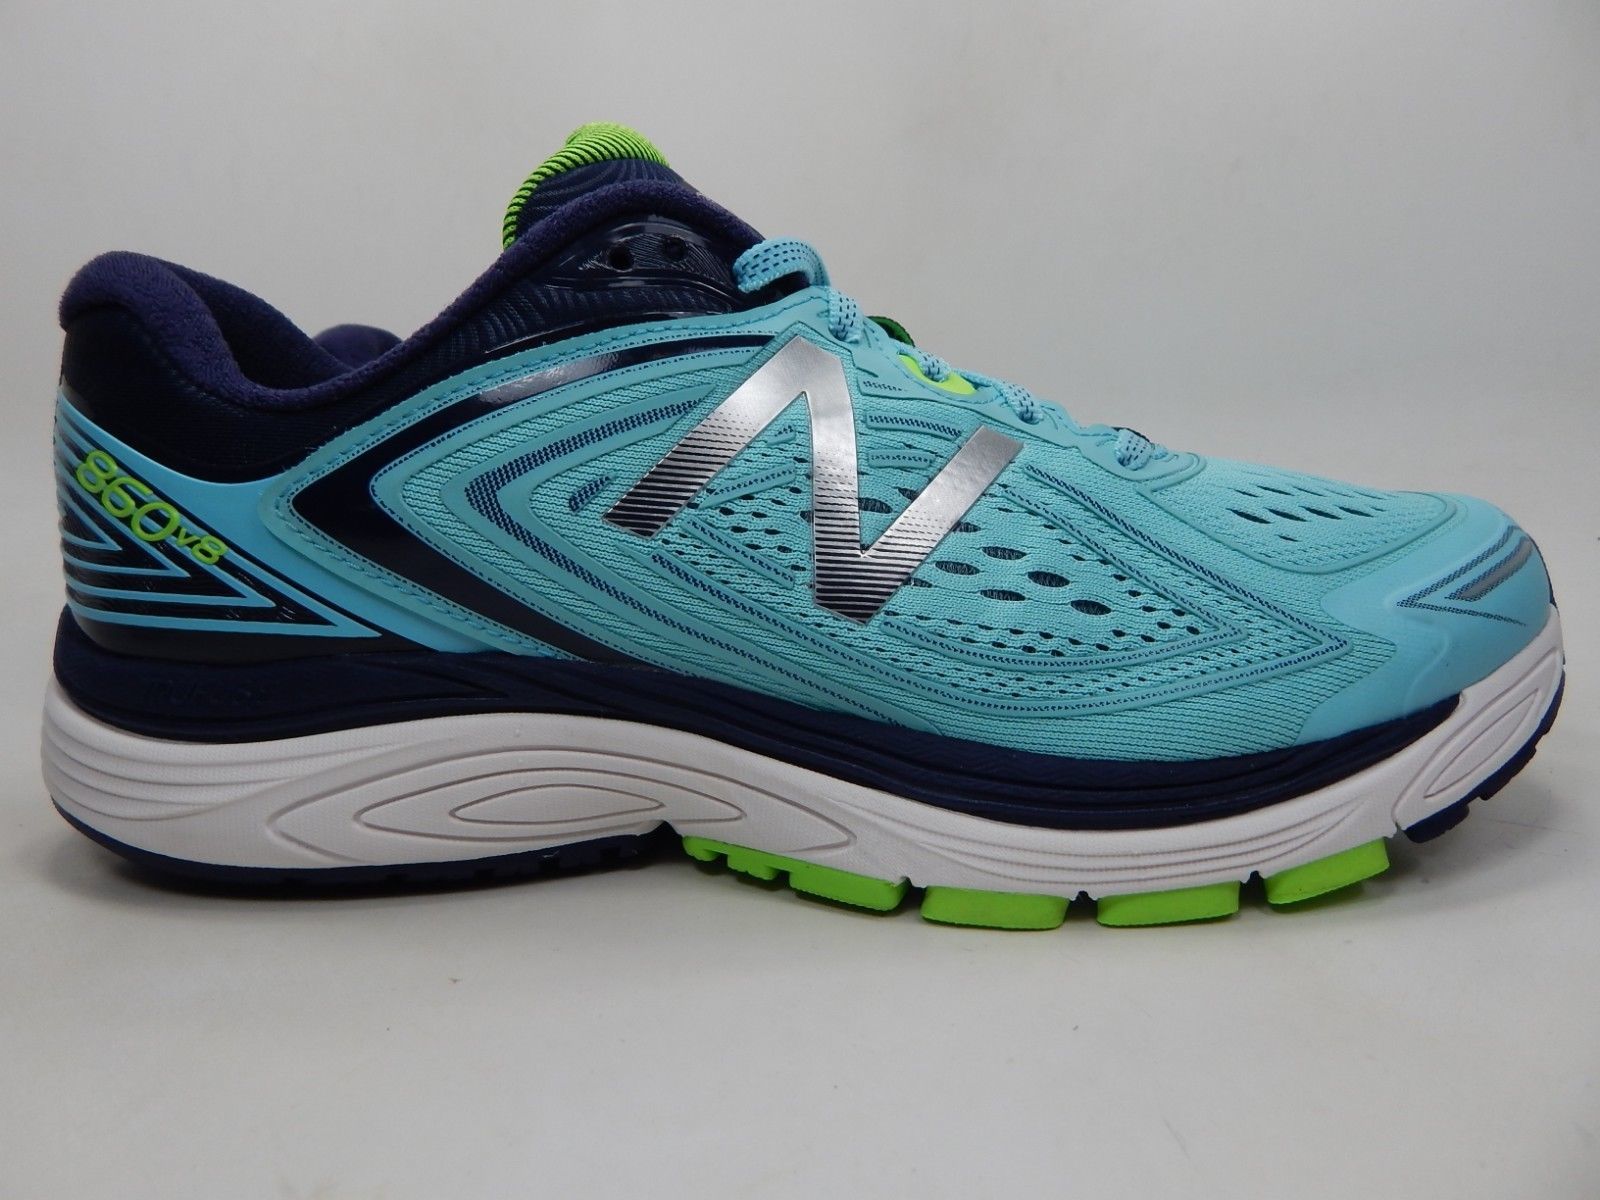 New Balance 860 v8 Size US 10 D WIDE EU 41.5 Women's Running Shoes Blue ...